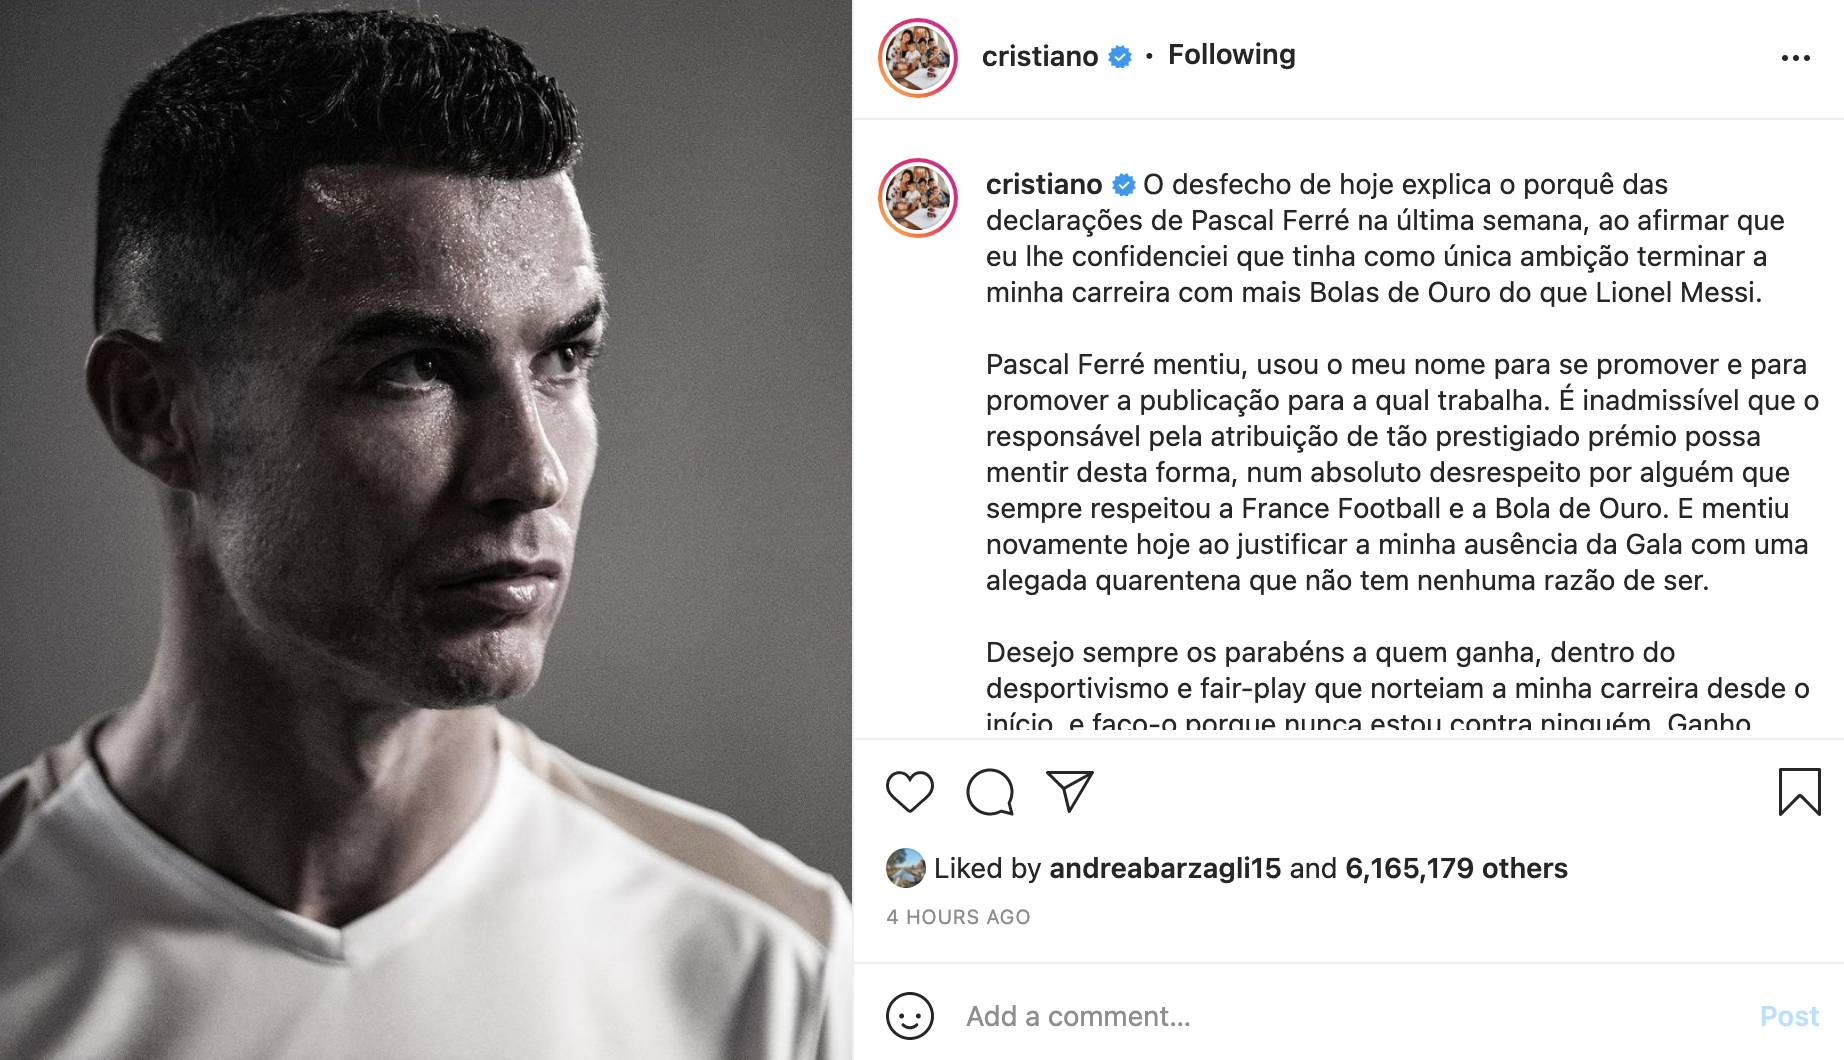 Ronaldo không dự lễ trao giải Quả bóng vàng, chỉ trích BTC giải thưởng France Football